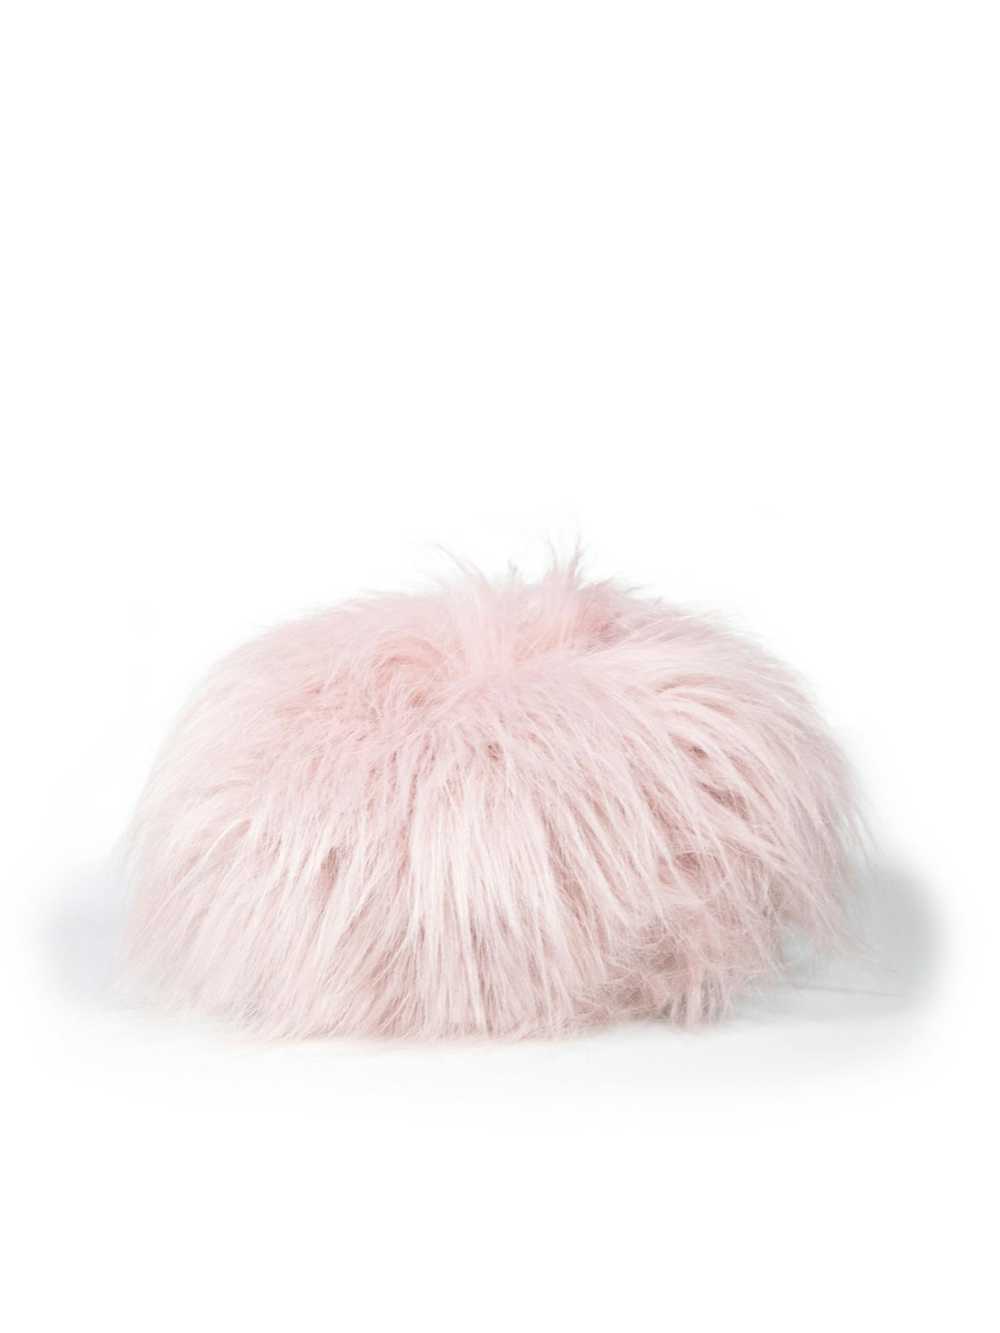 Hats × Miu Miu Pink Faux Fur Buckled Cap - image 3